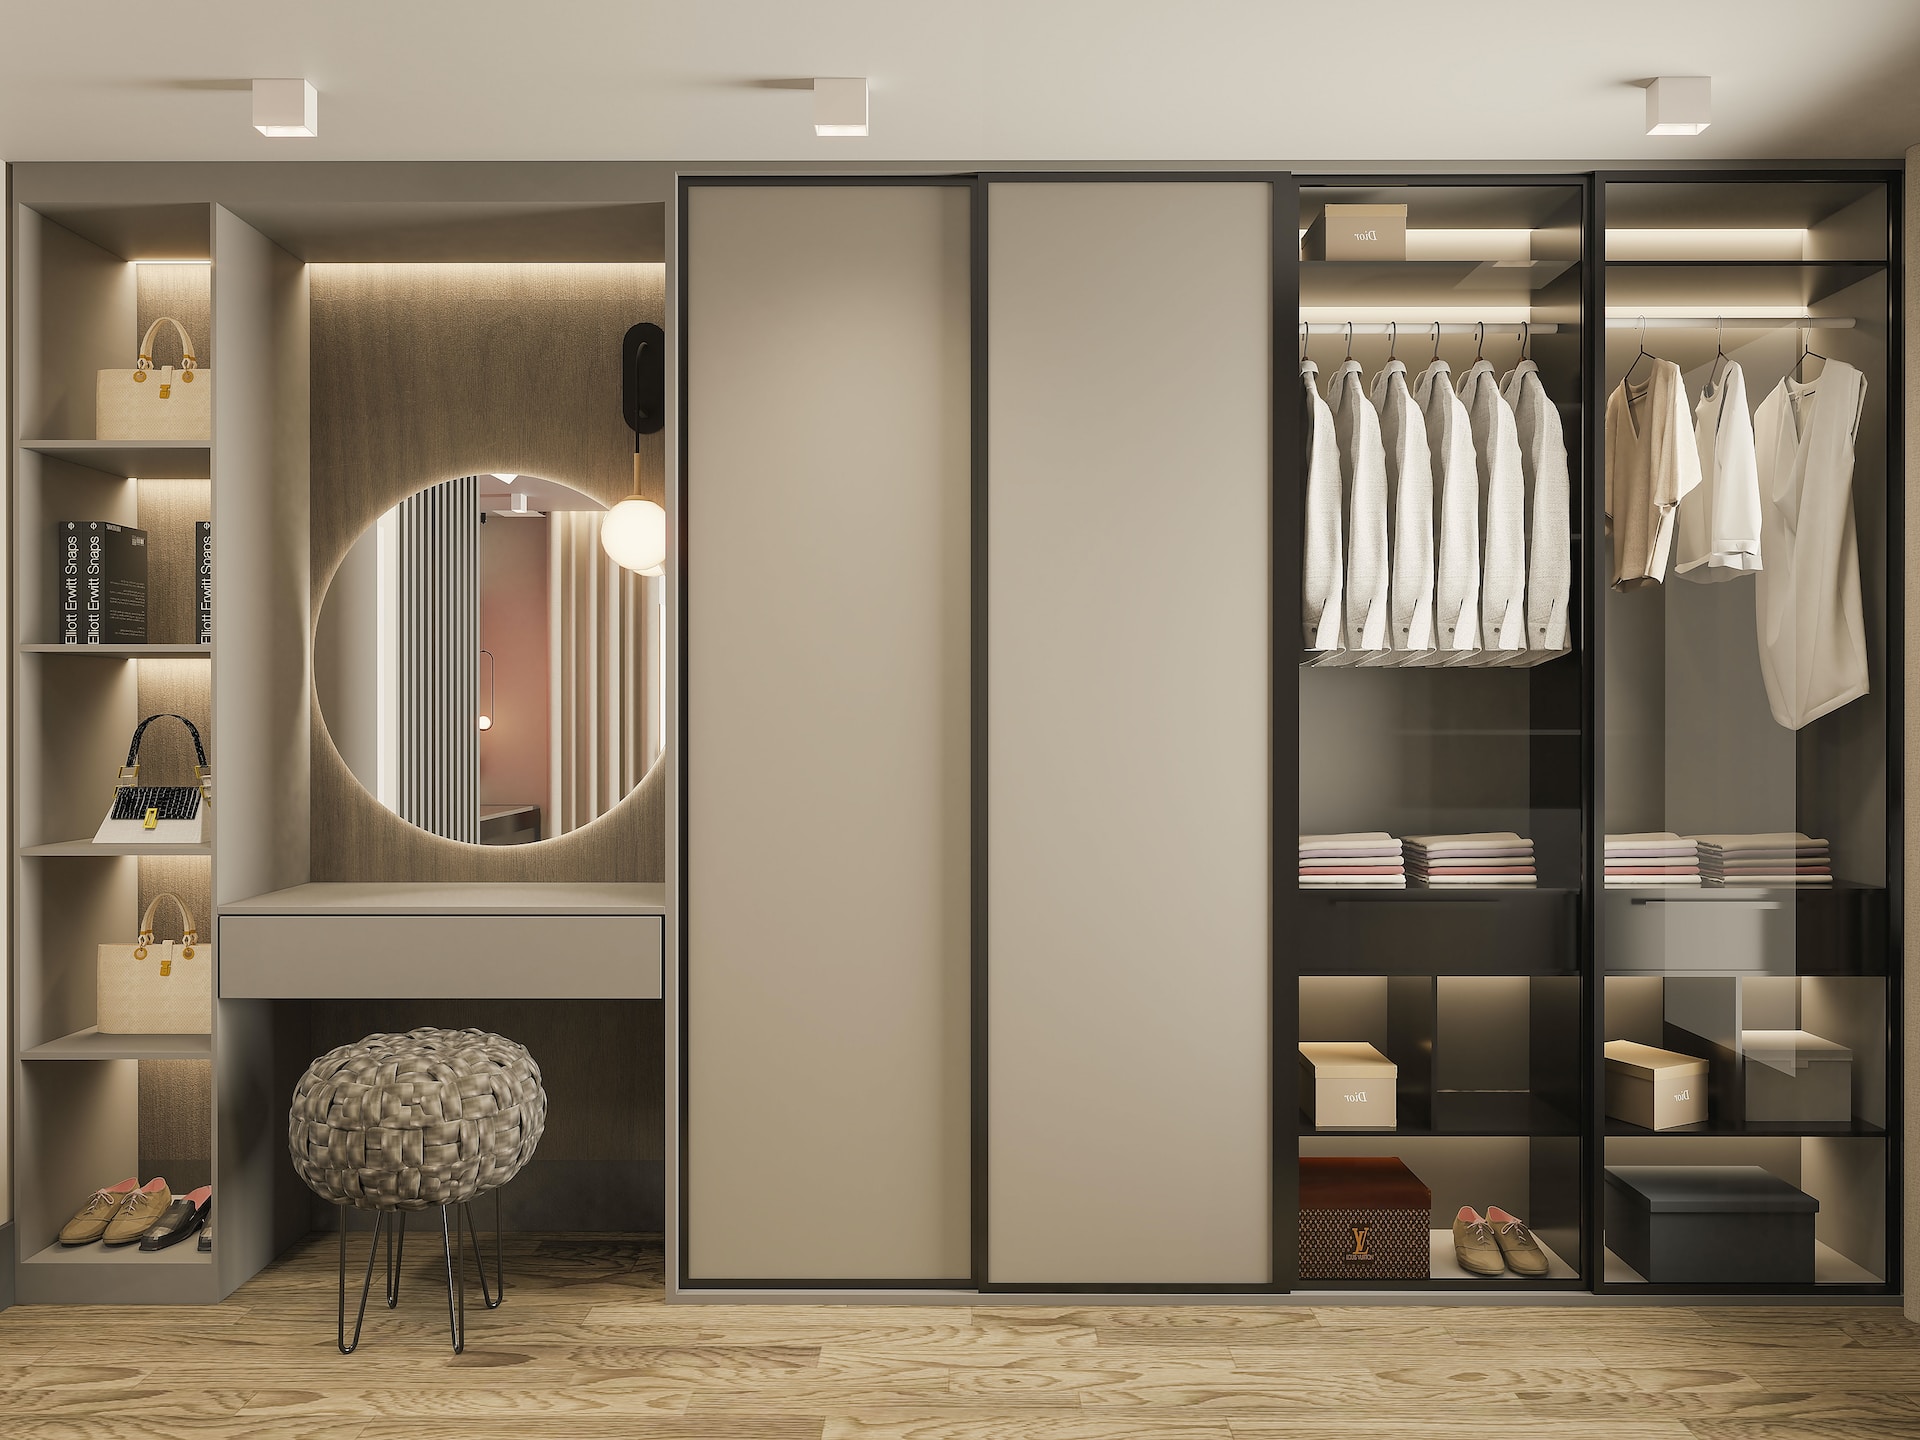 Garderoba minimalisty: jak zbudować minimalistyczną szafę i jednocześnie wyglądać stylowo?